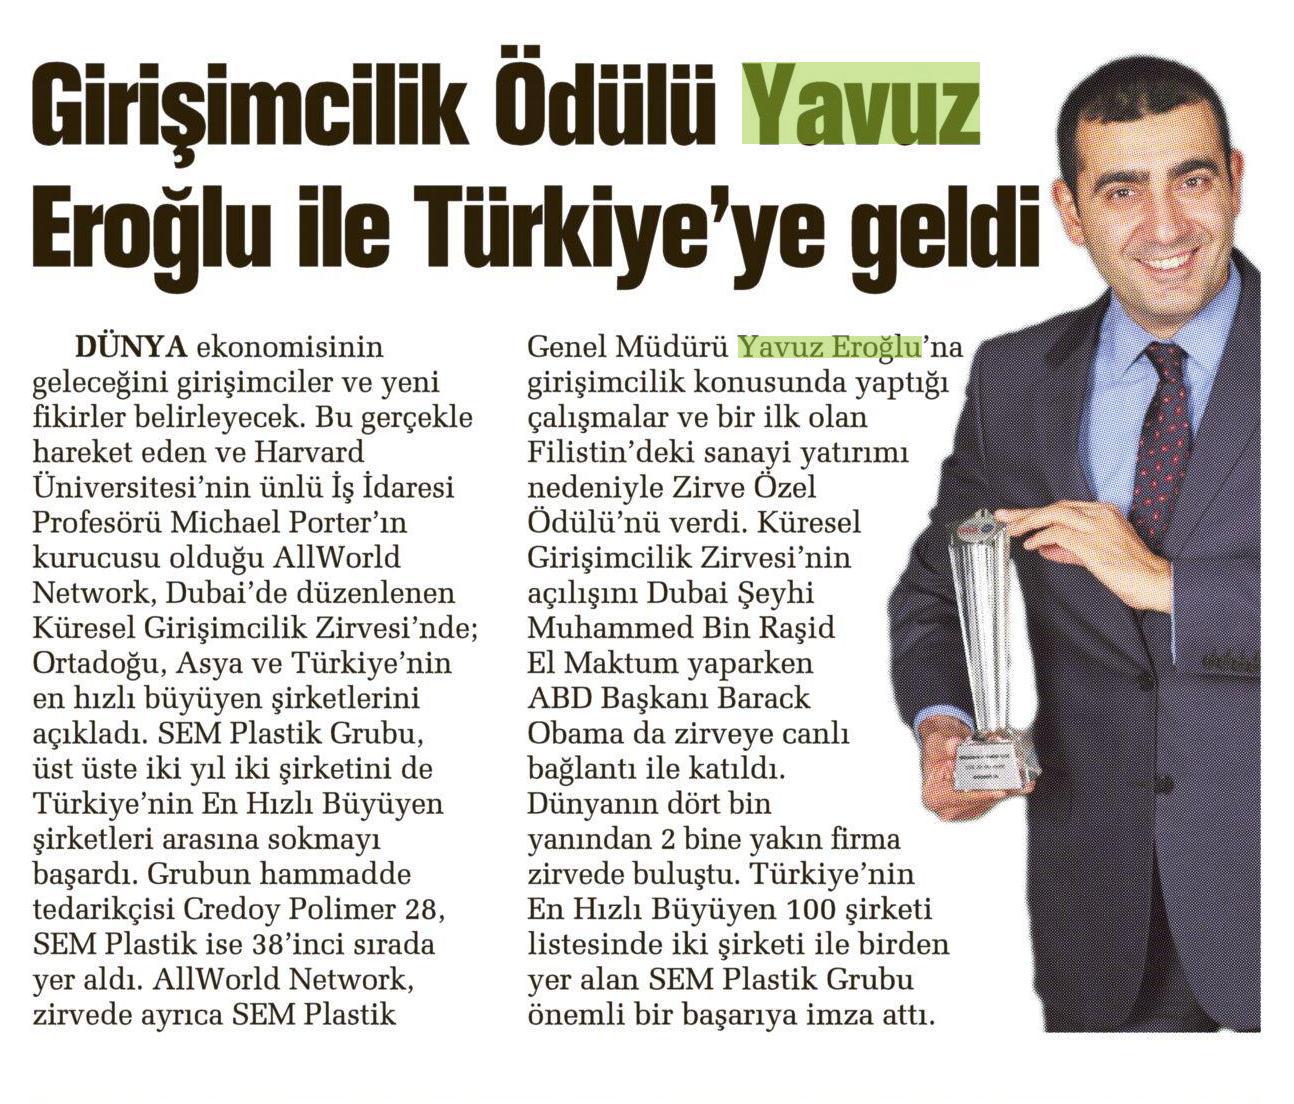 Girişimcilik Ödülü Yavuz Eroğlu ile Türkiye'ye geldi